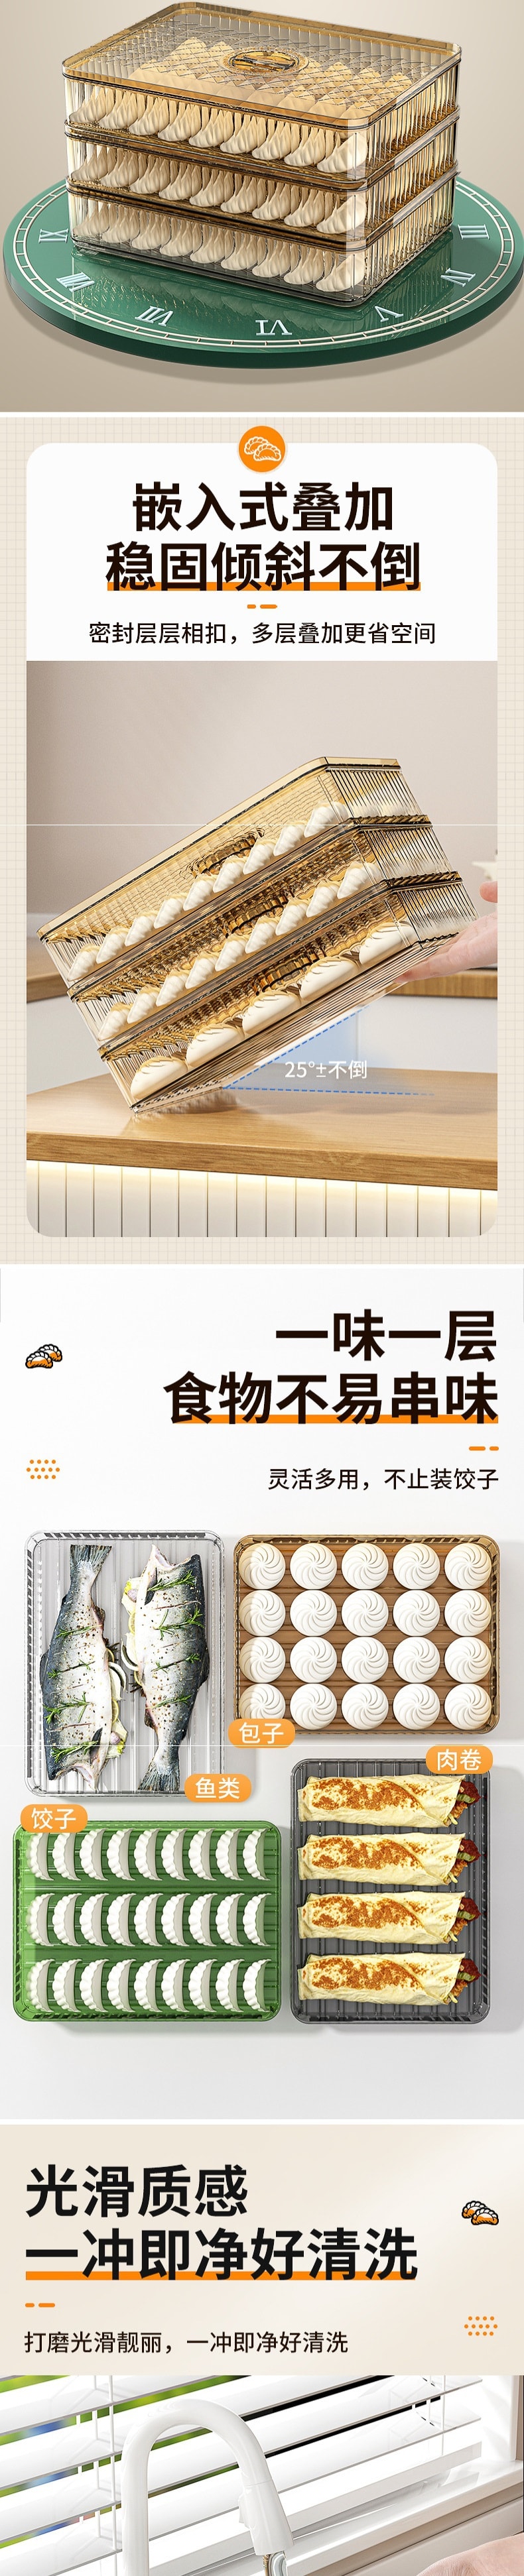 【中國直郵】上海老味特產花生酥 蜂蜜桂花花生酥 400g/盒 2盒裝 傳統糕點零食(另有3種口味也可備註)